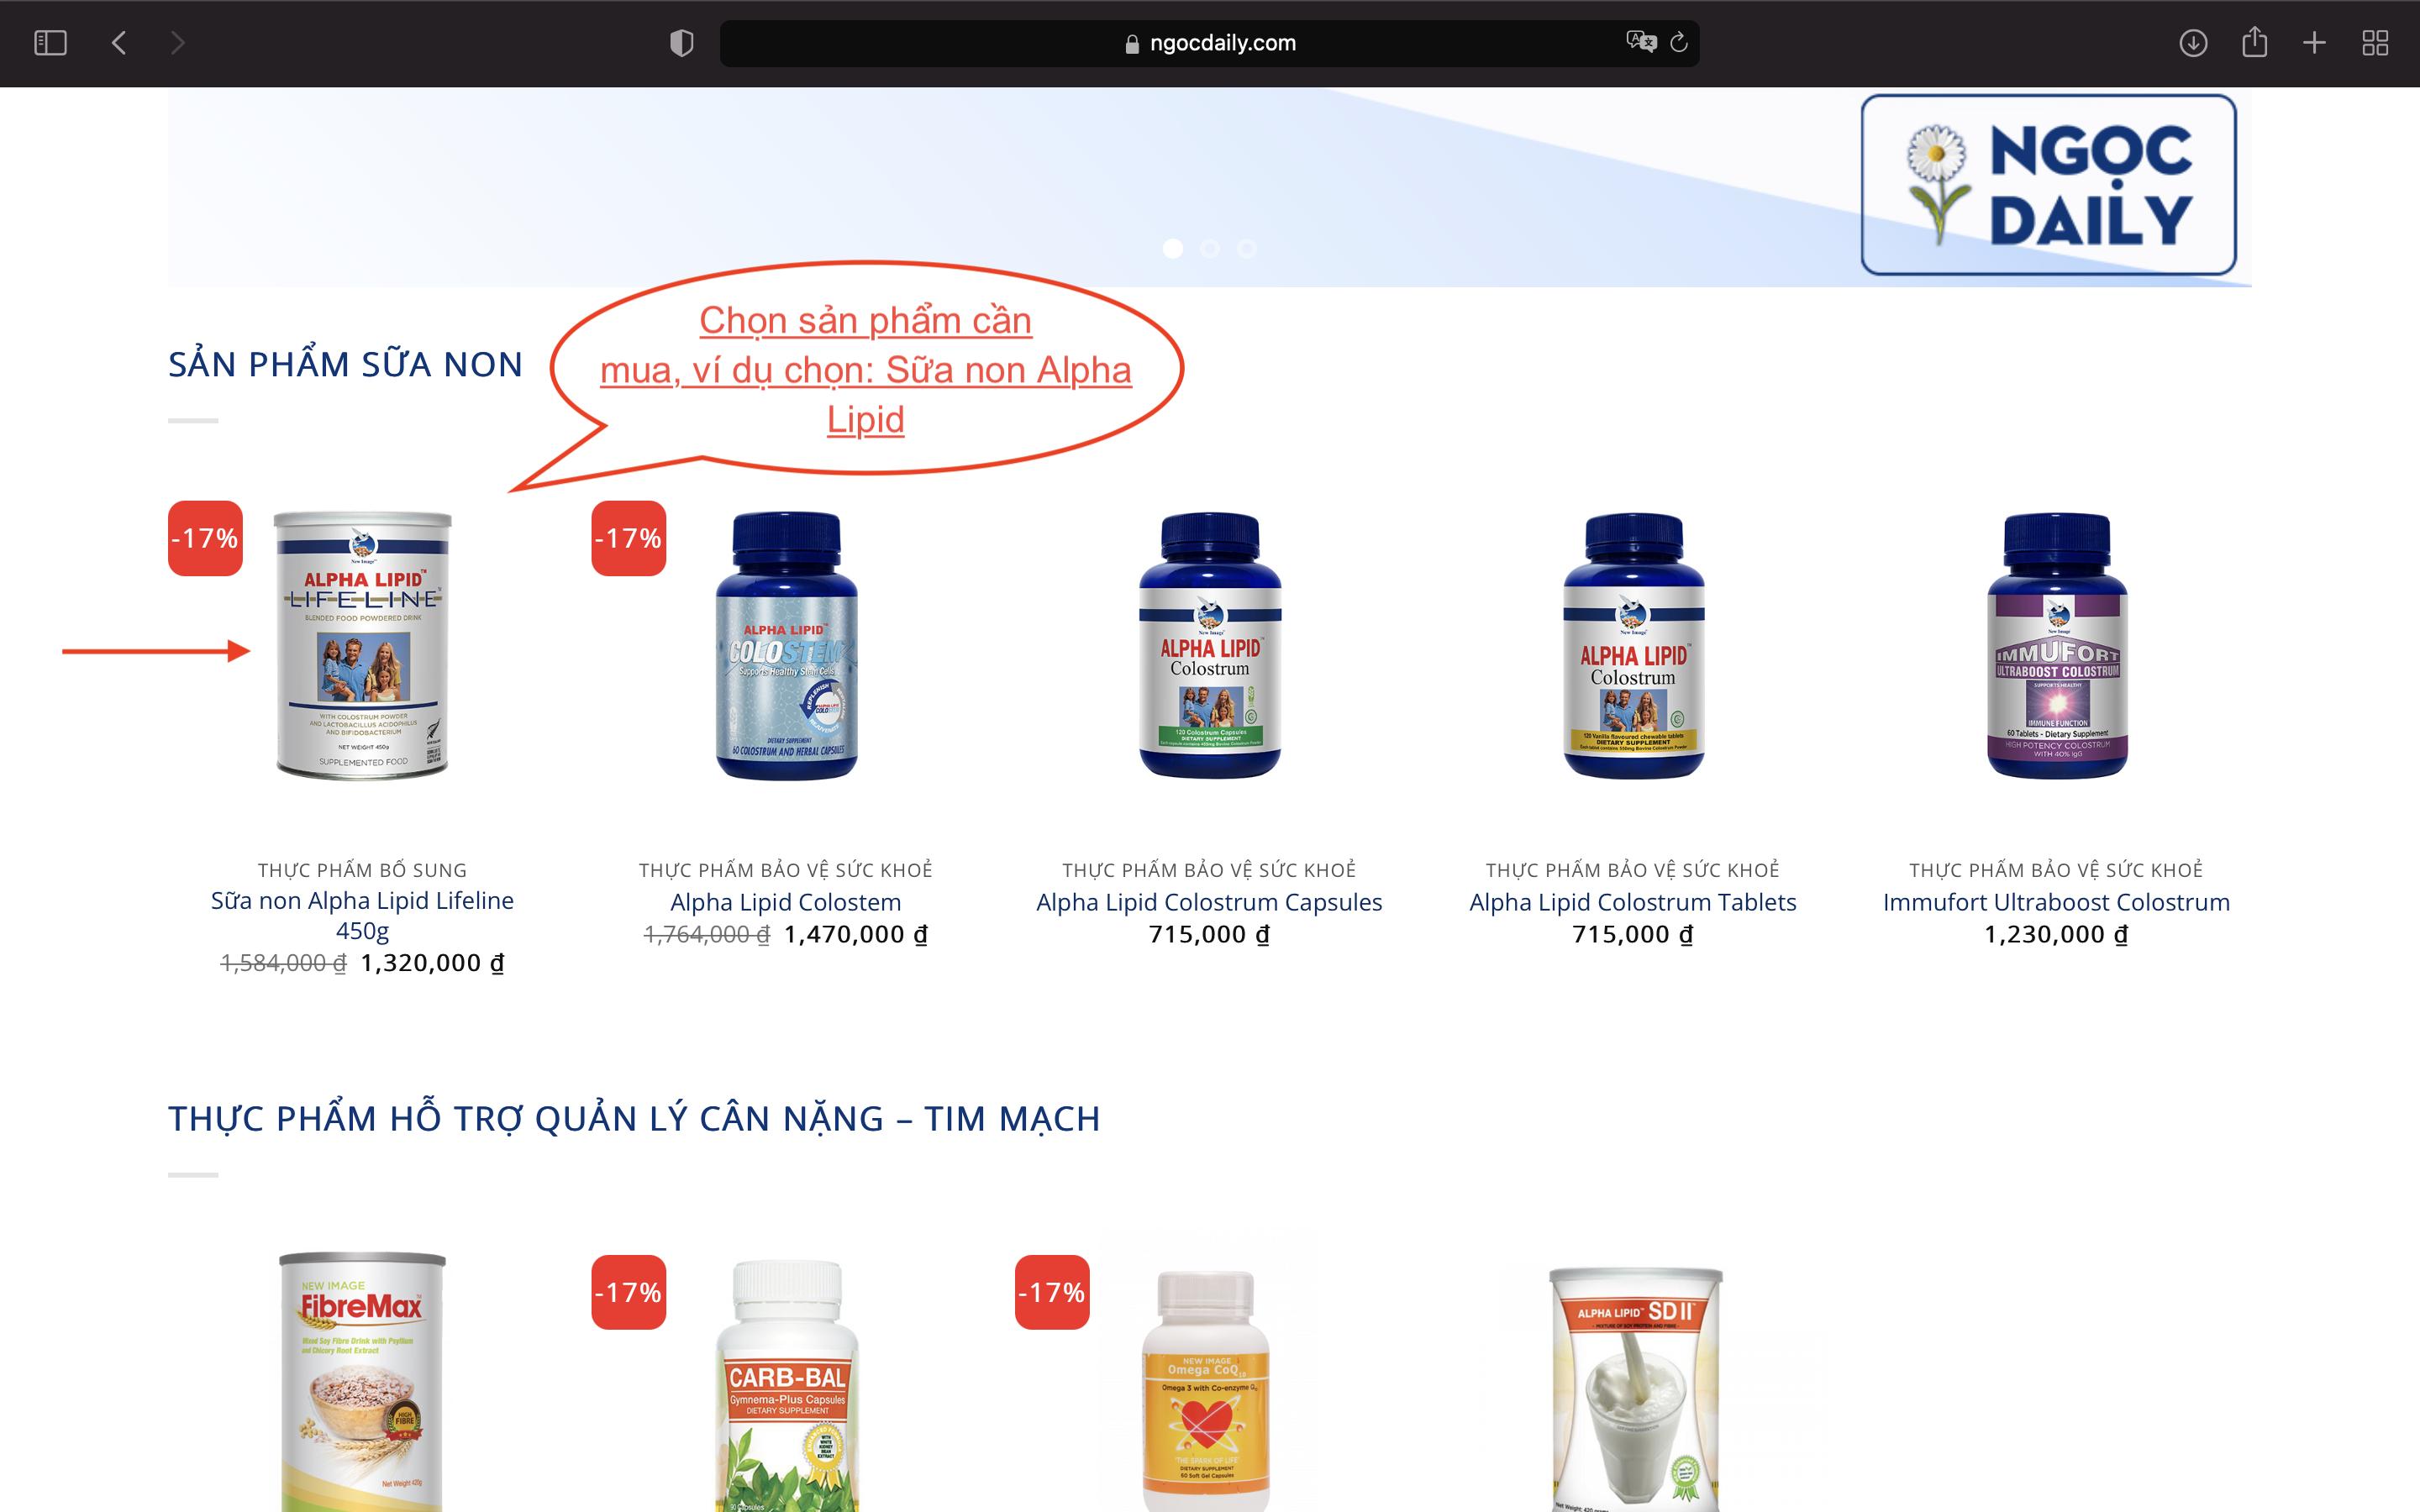 Truy cập đại lý sữa non Alpha Lipid - Ngocdaily.com và lựa chọn sản phẩm cần mua